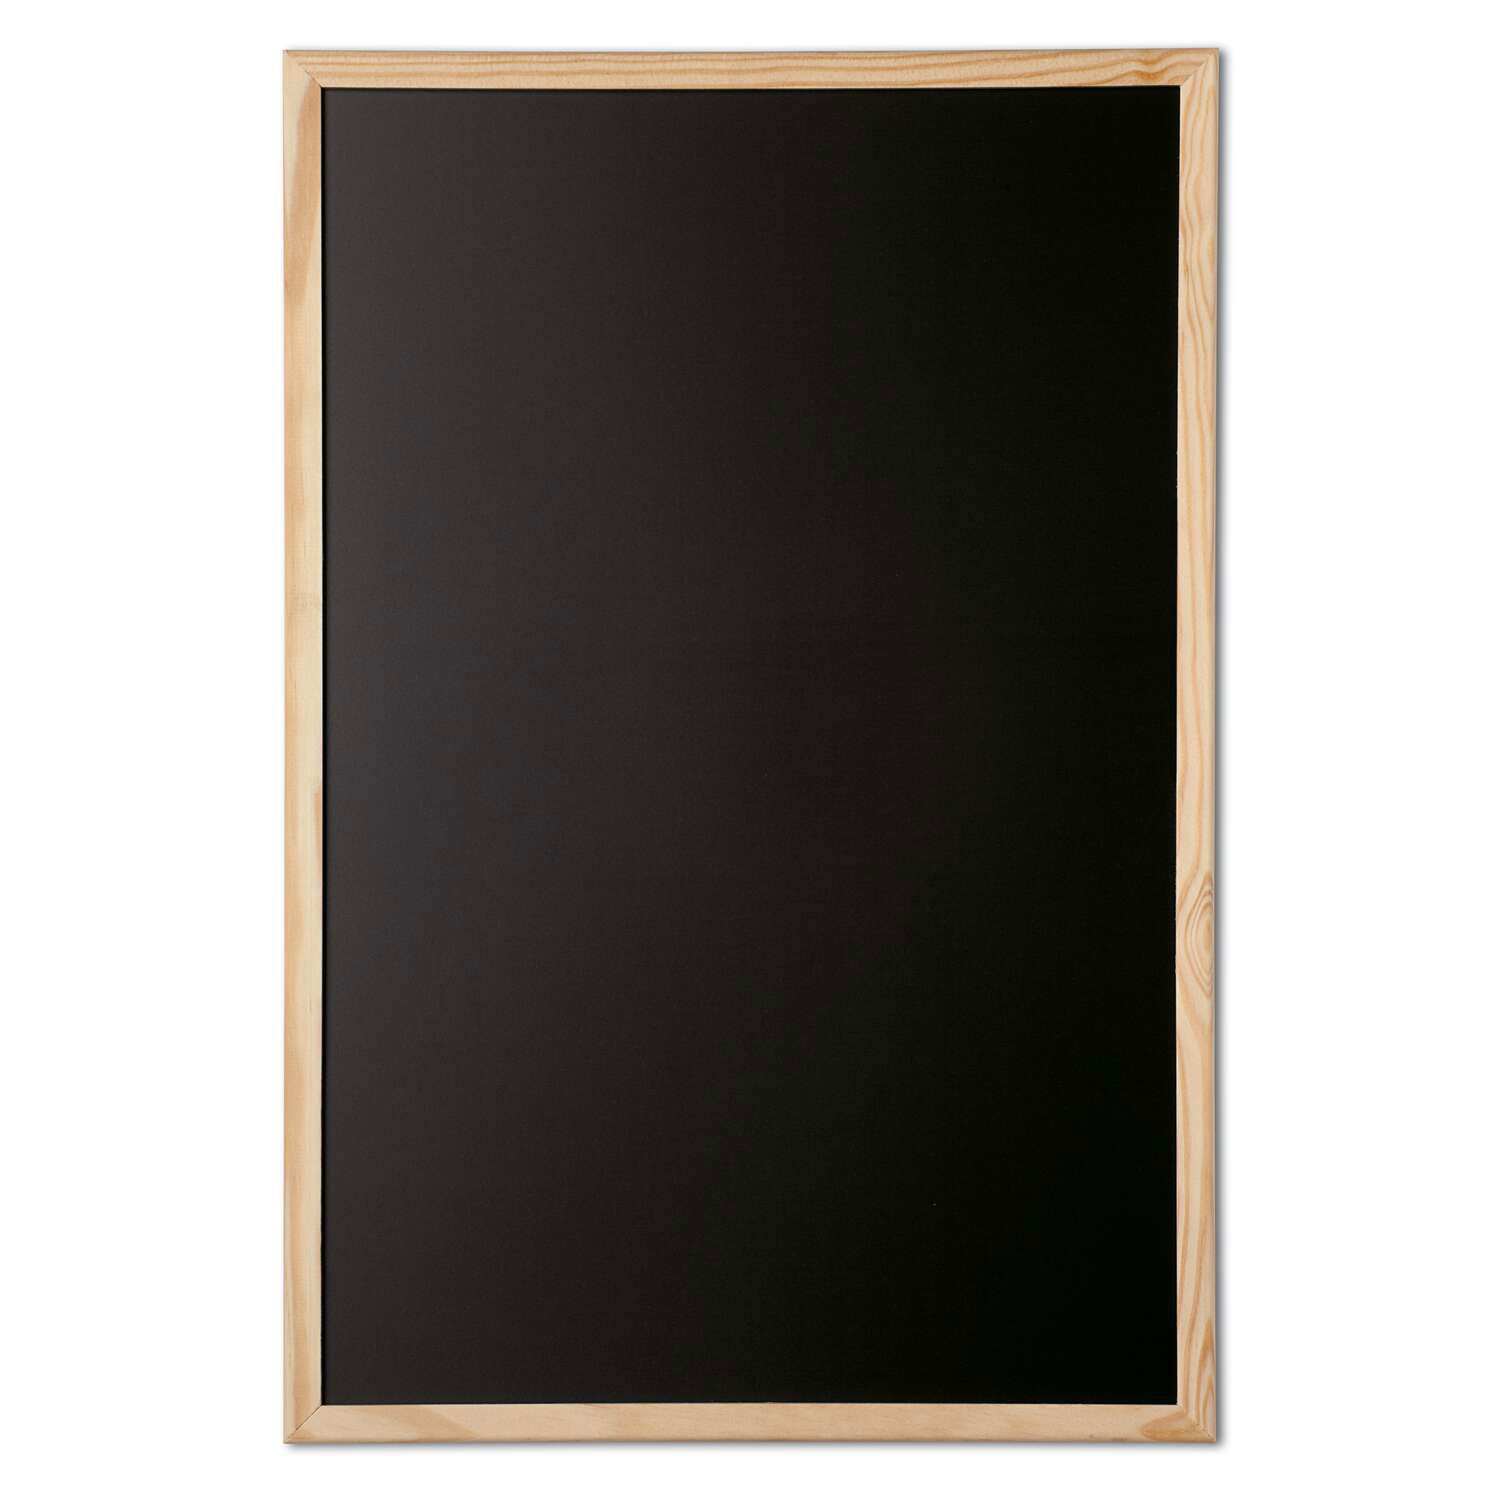 Tableau pour craie, cadre bois, 60 x 80 cm